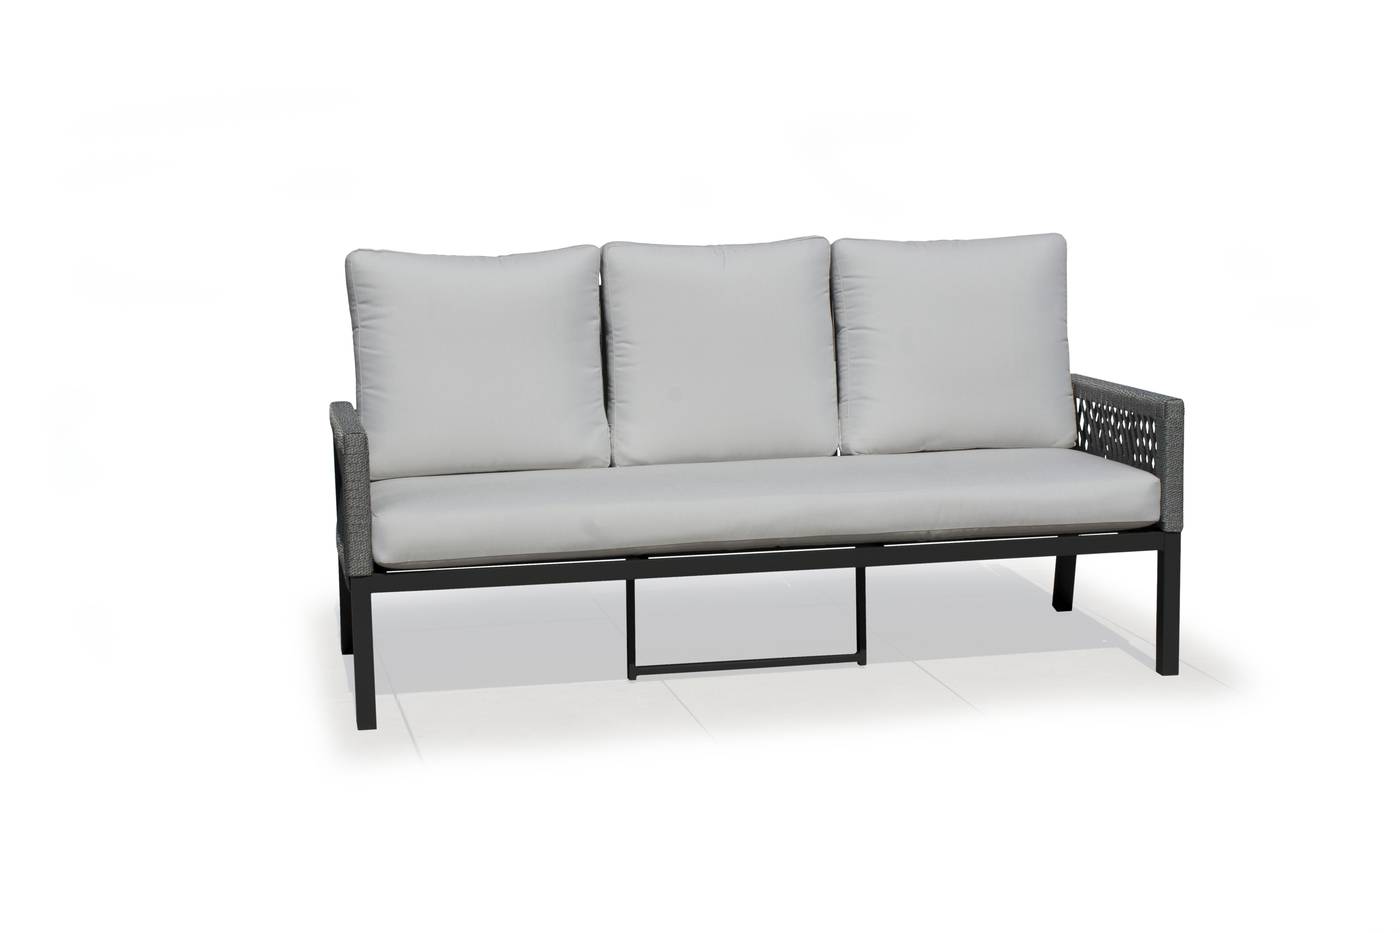 Set Aluminio Havana-10 - Conjunto aluminio y cuerda: 1 sofá de 3 plazas + 2 sillones + 1 mesa de centro + 2 taburetes. Colores disponibles en blanco, gris, marrón o champagne.